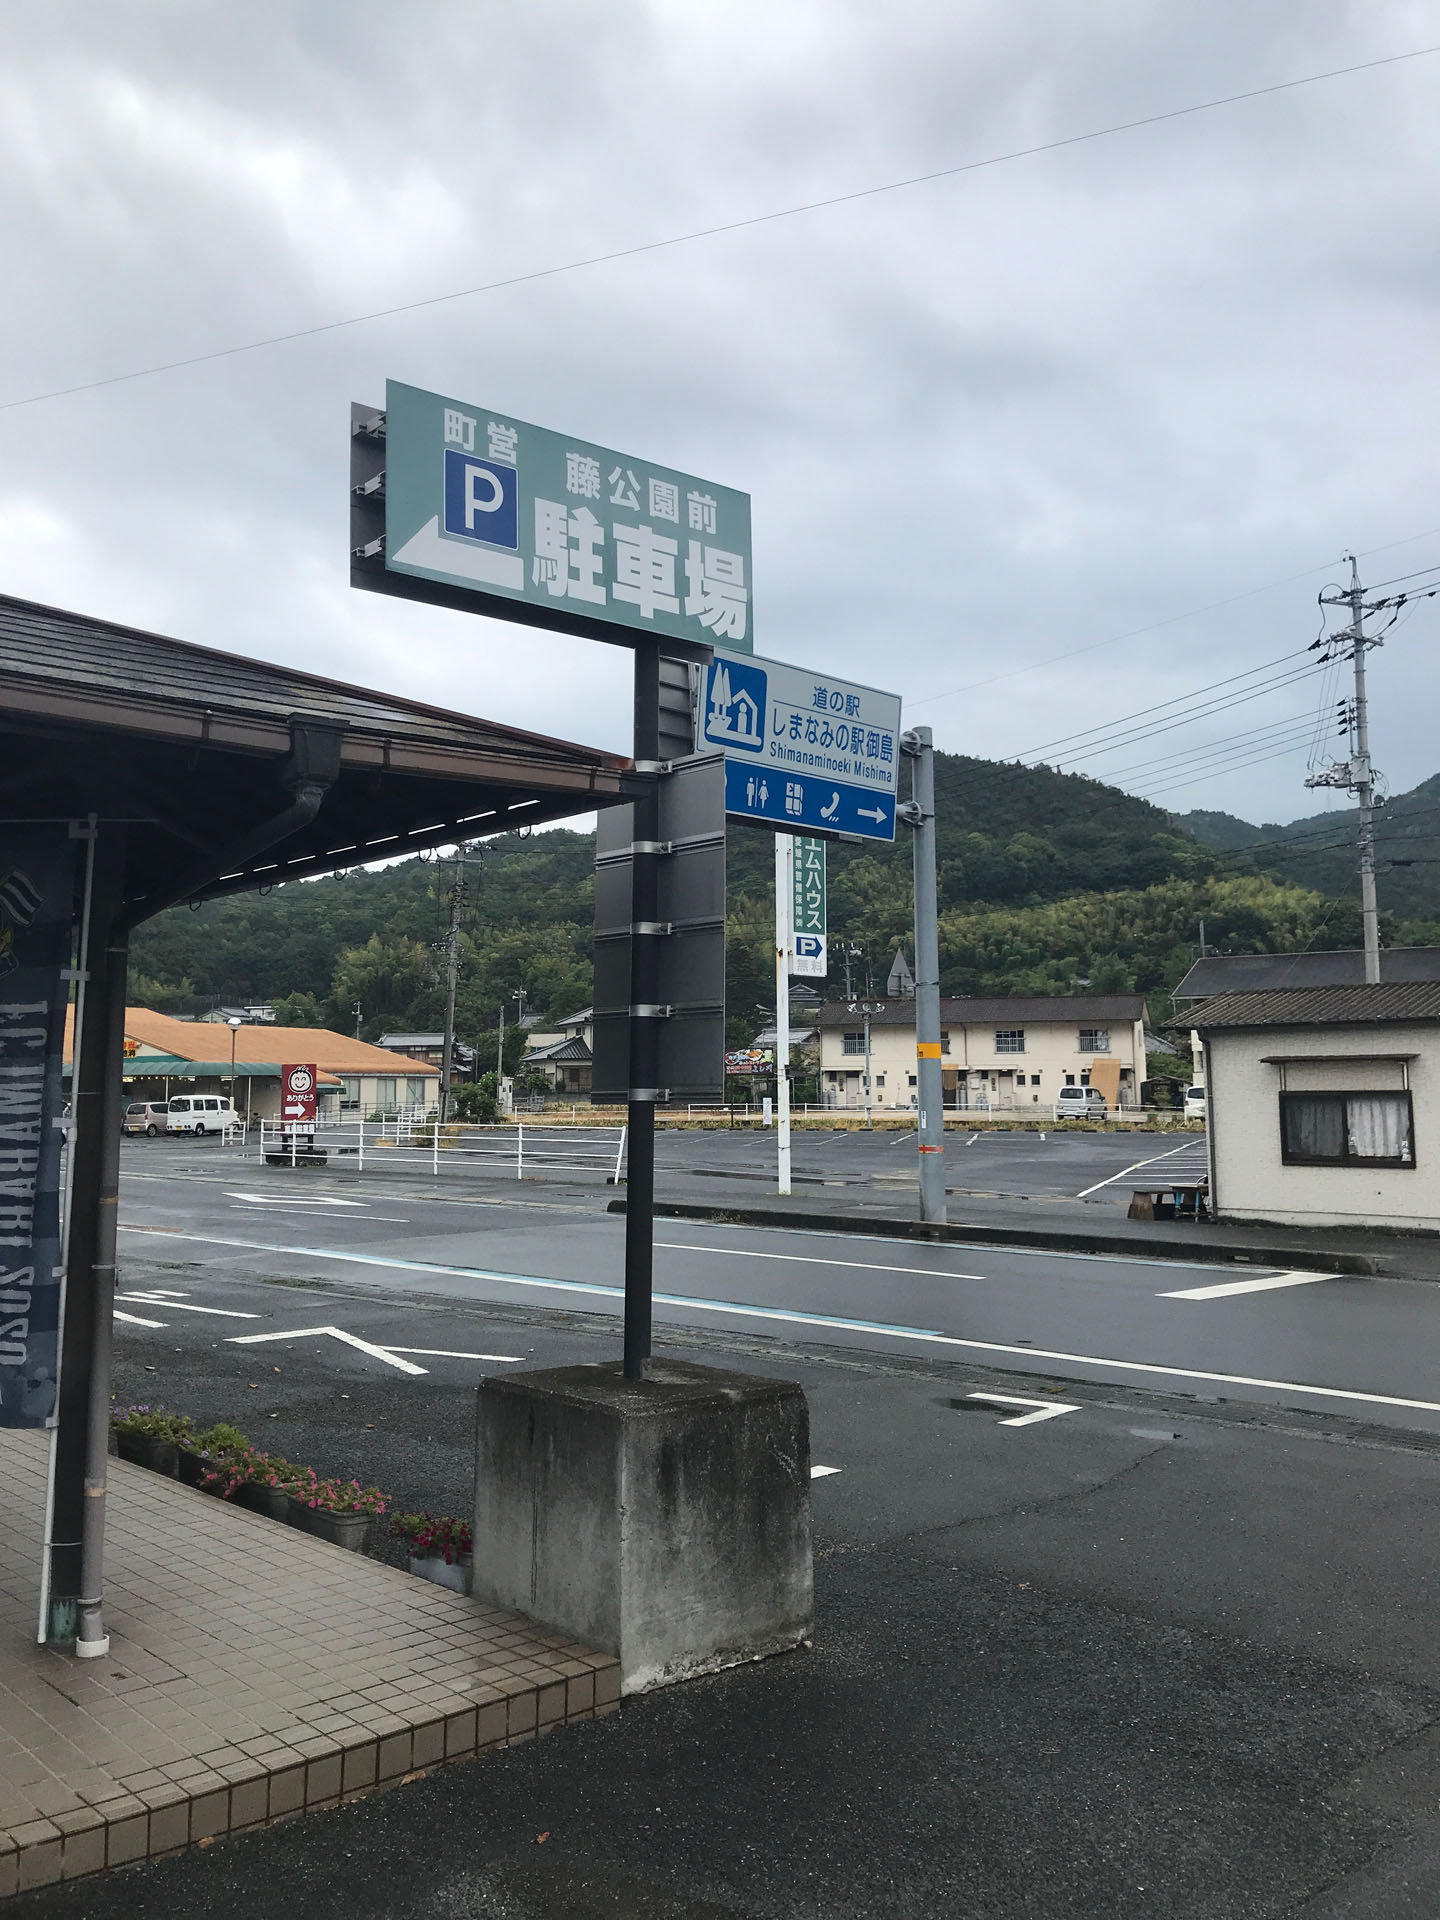 道の駅に停めてスタート。
間違える人はいないと思うけど、大三島には道の駅が2つあるので注意（間違えた）。
それと最初間違えて逆方向に歩いてます。前途多難。
